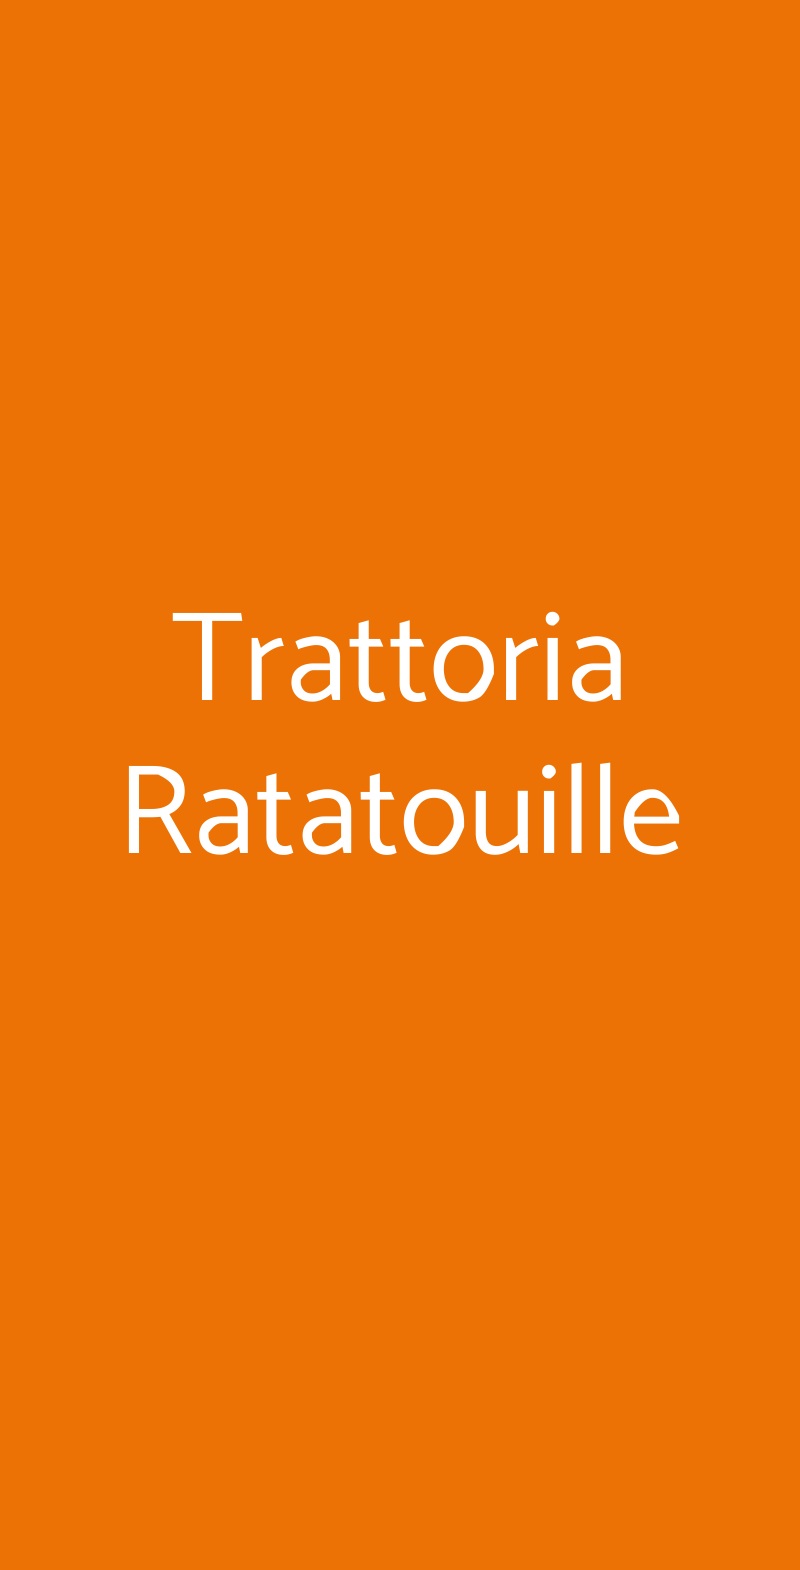 Trattoria Ratatouille Forli menù 1 pagina